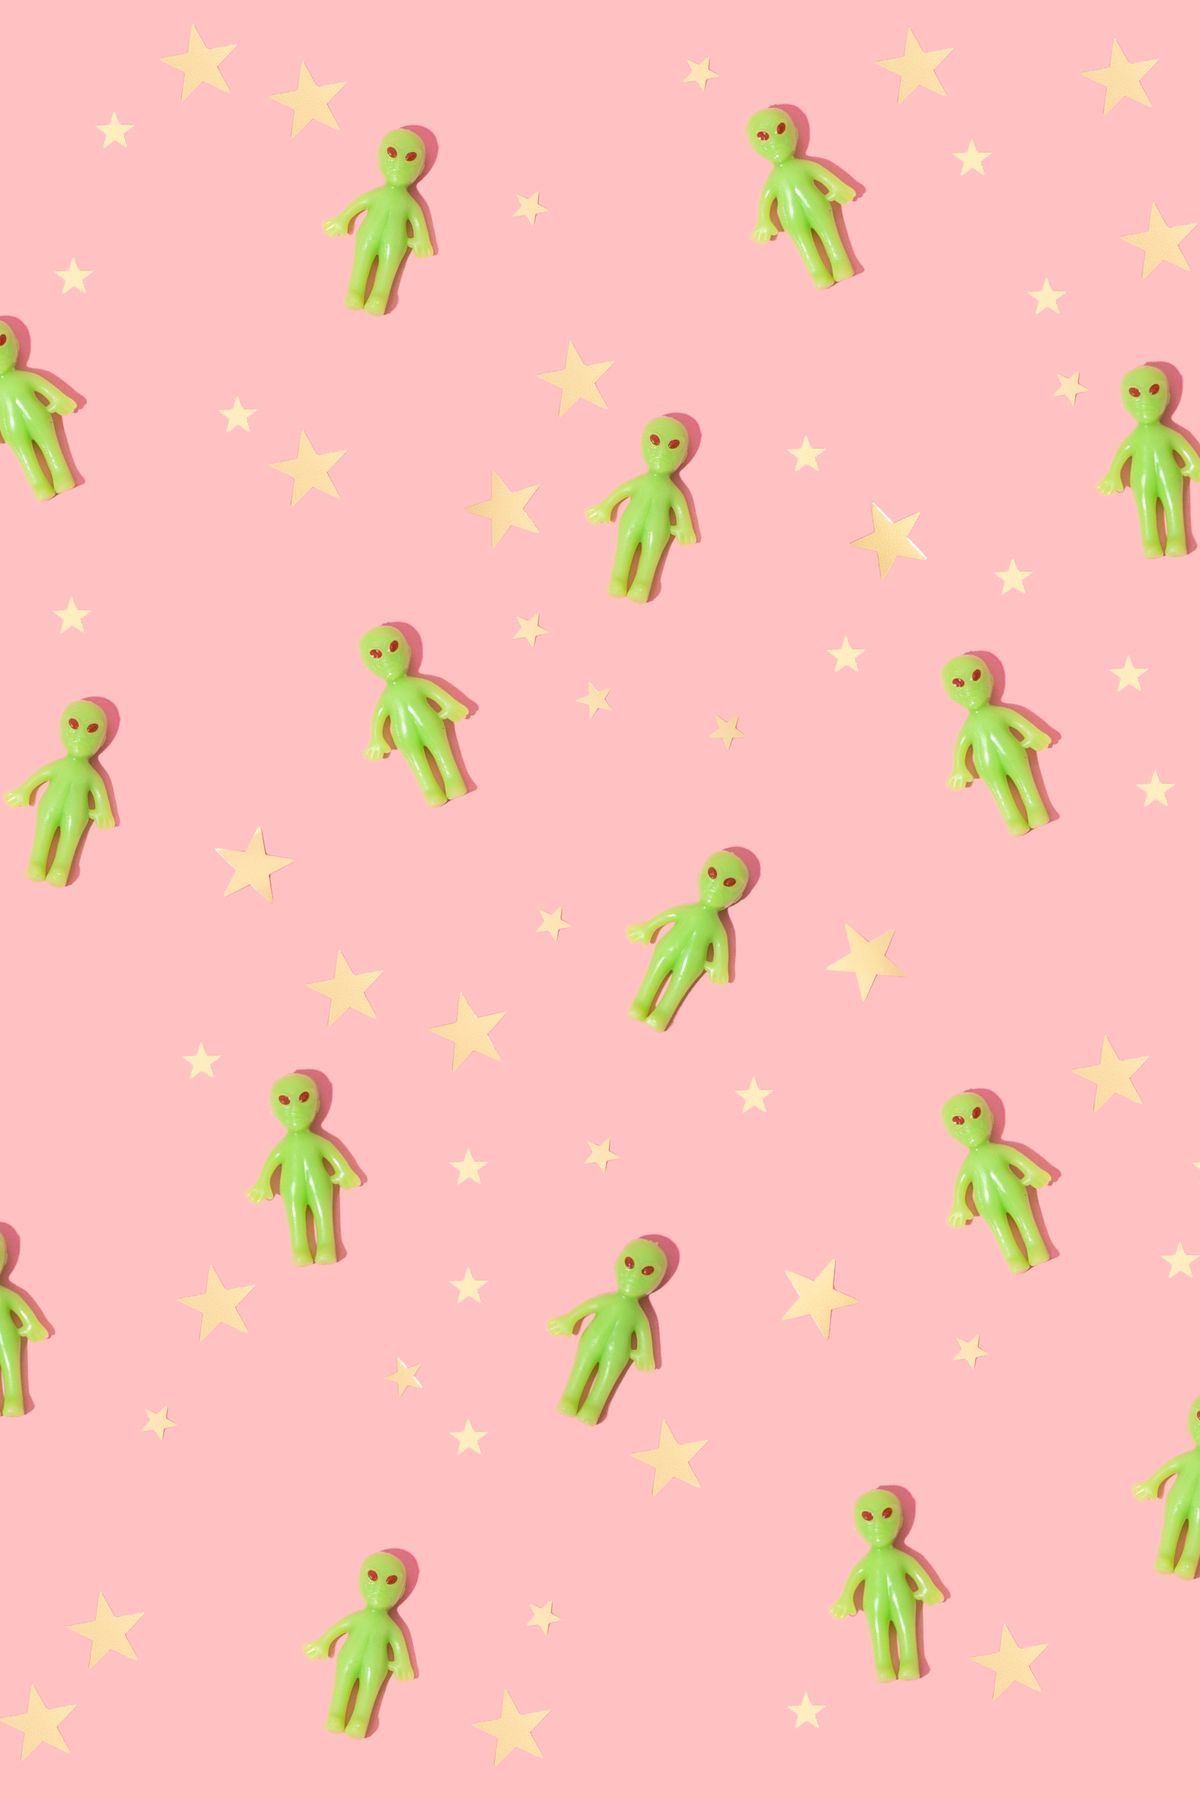 Aesthetic Alien Desktop Wallpapers